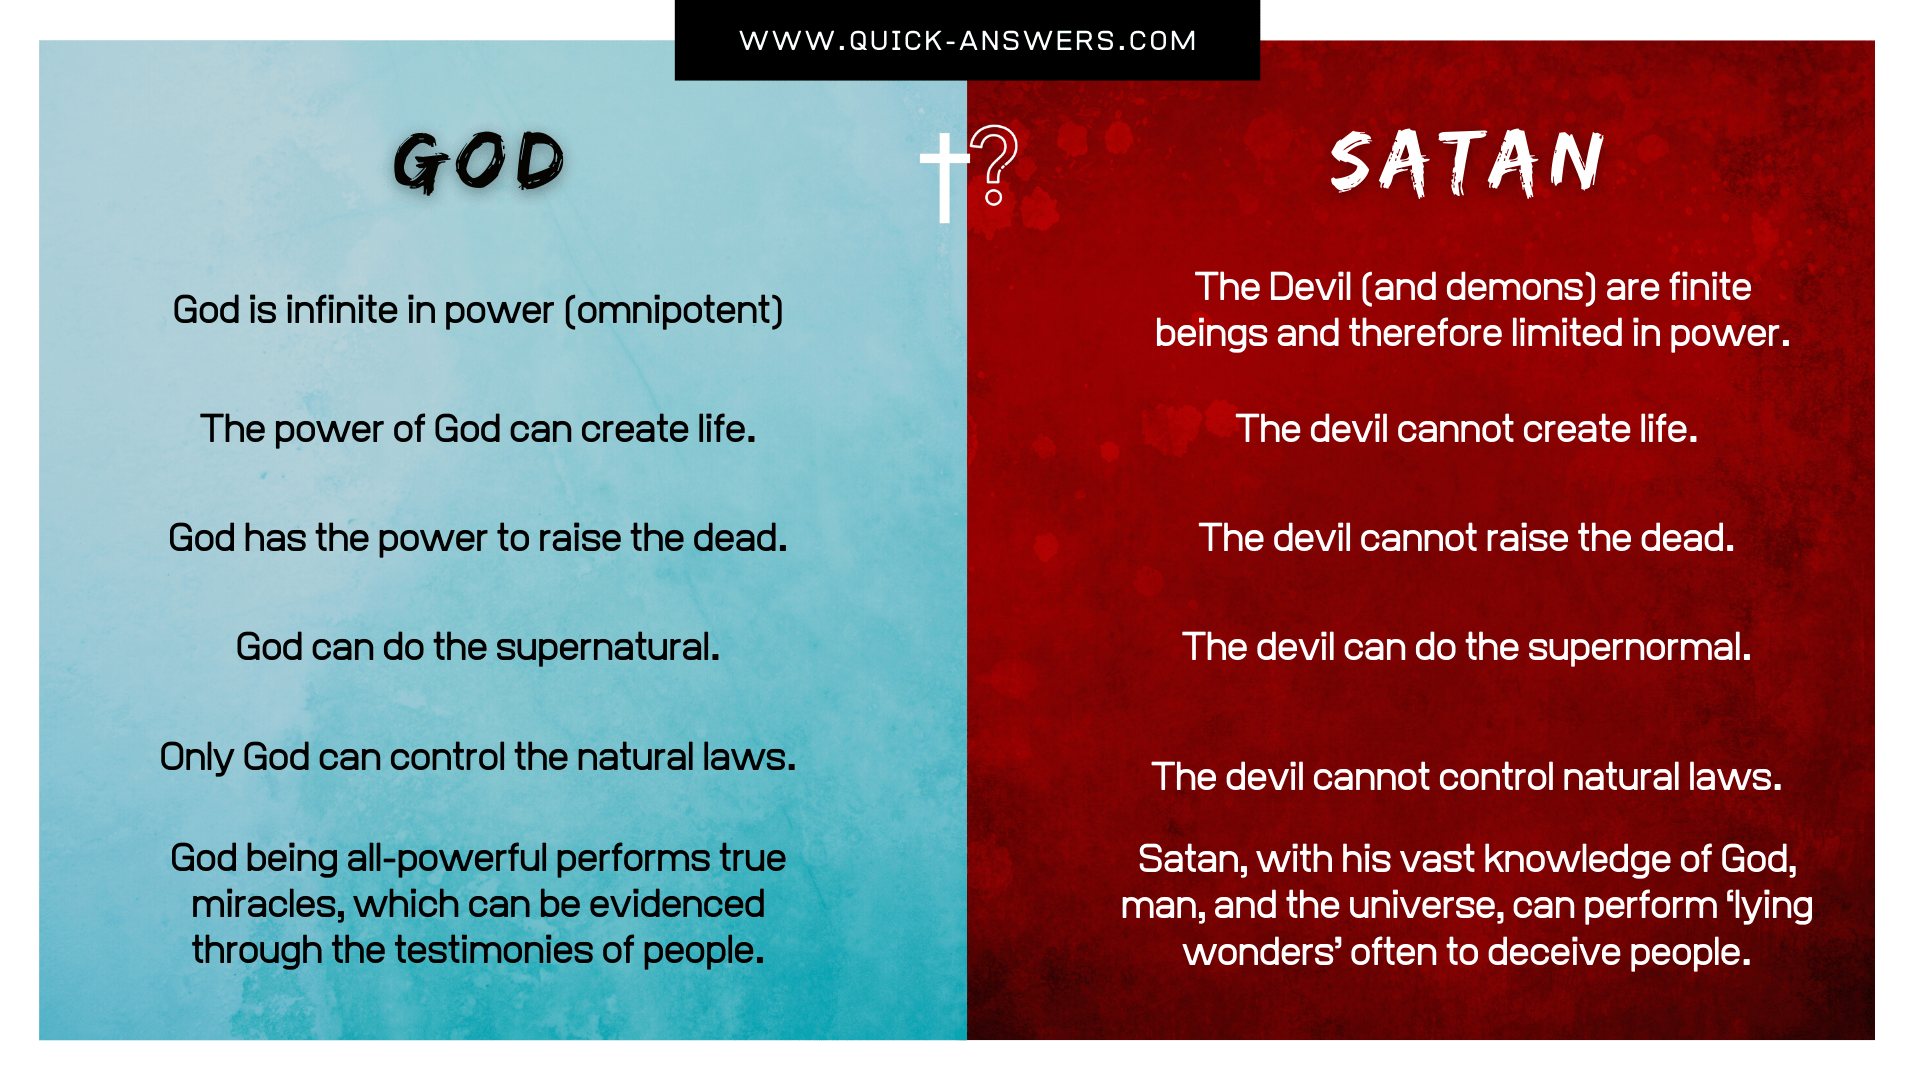 god vs satan images